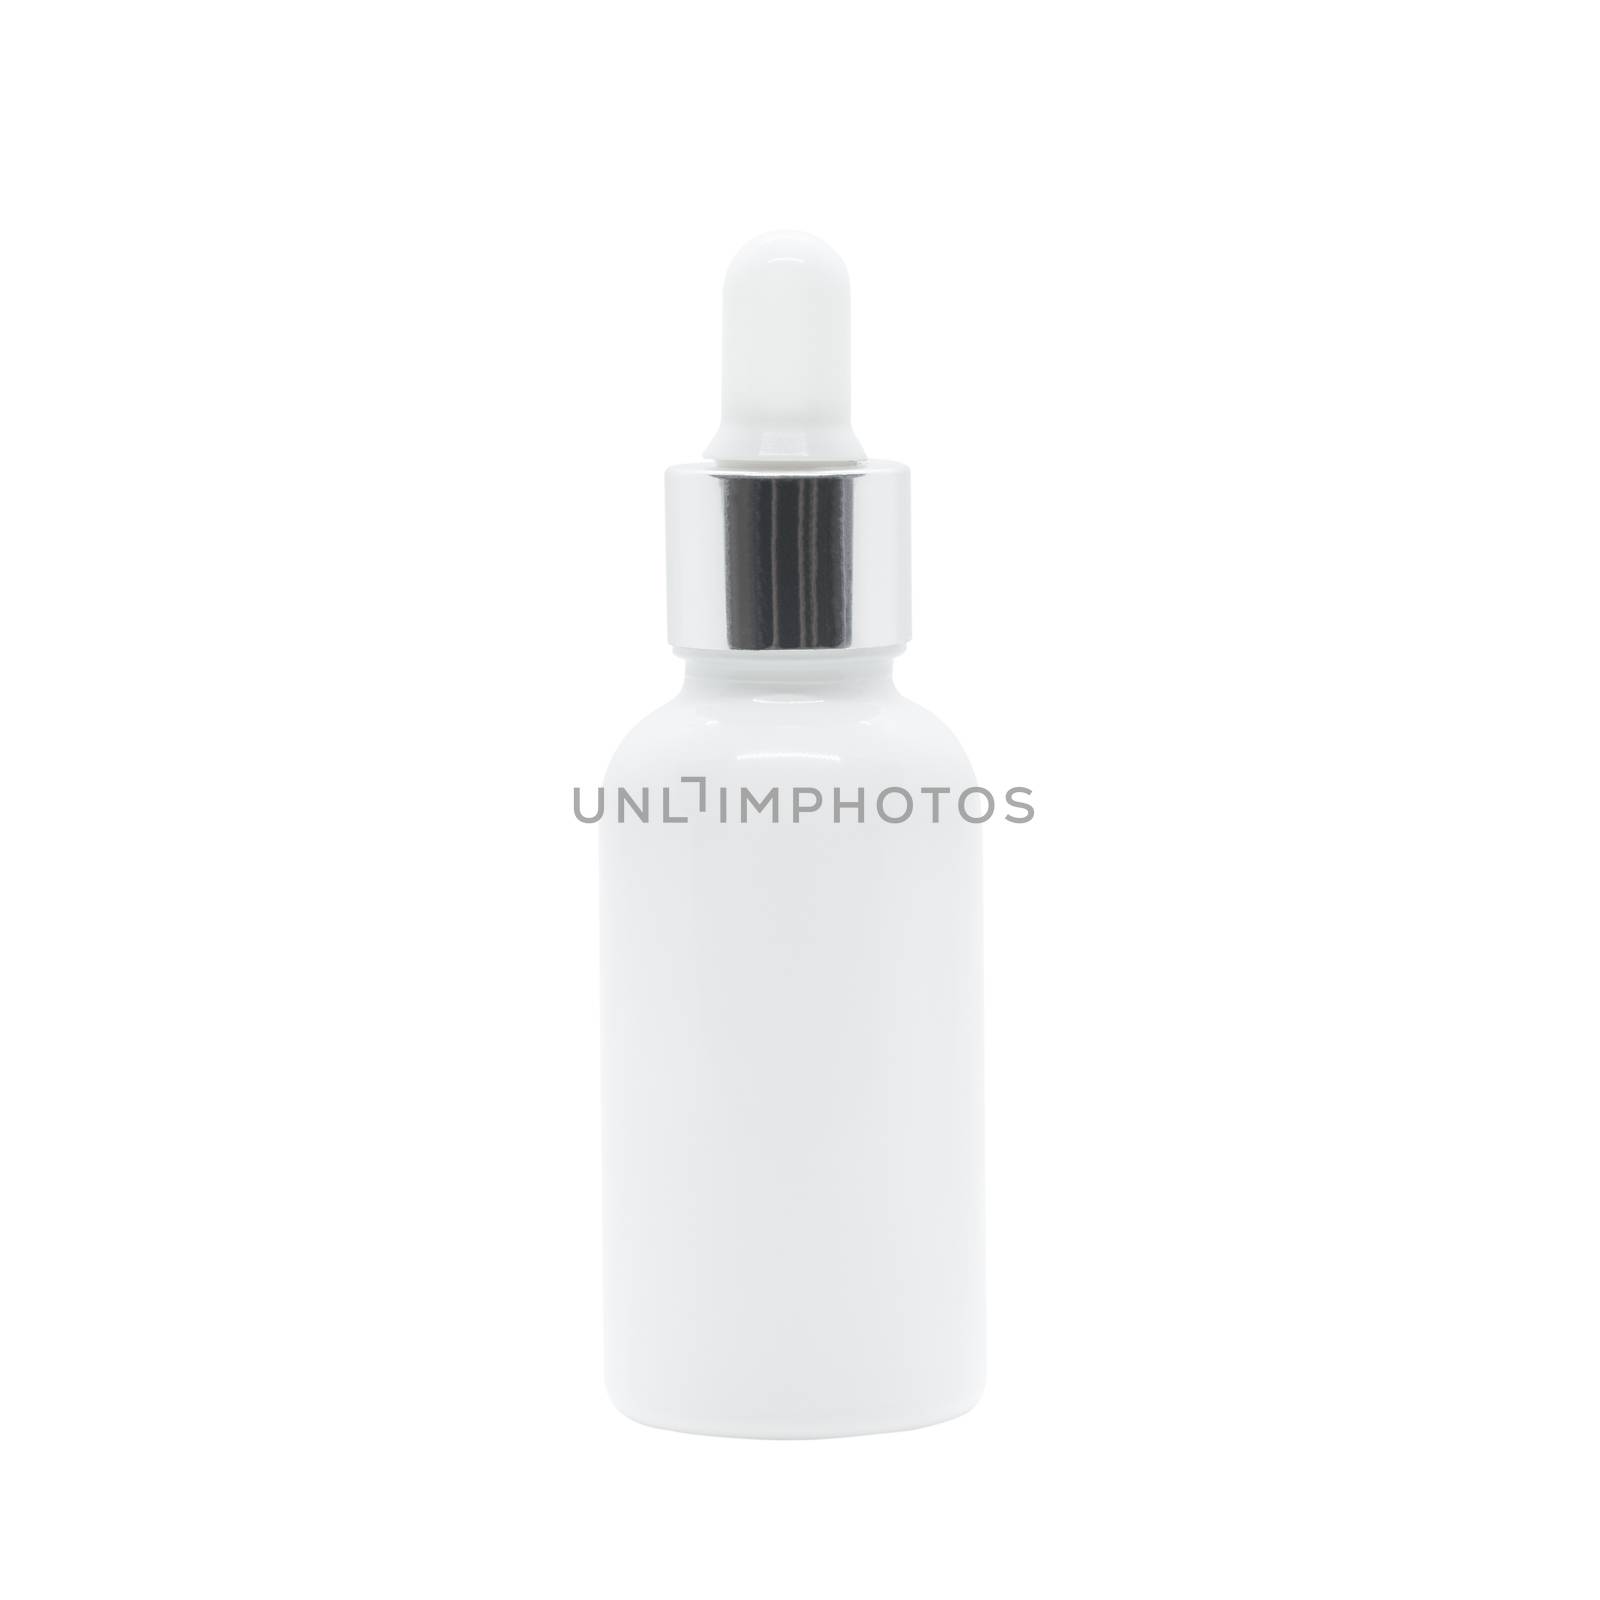 White glass dropper serum bottle on white background by stoonn